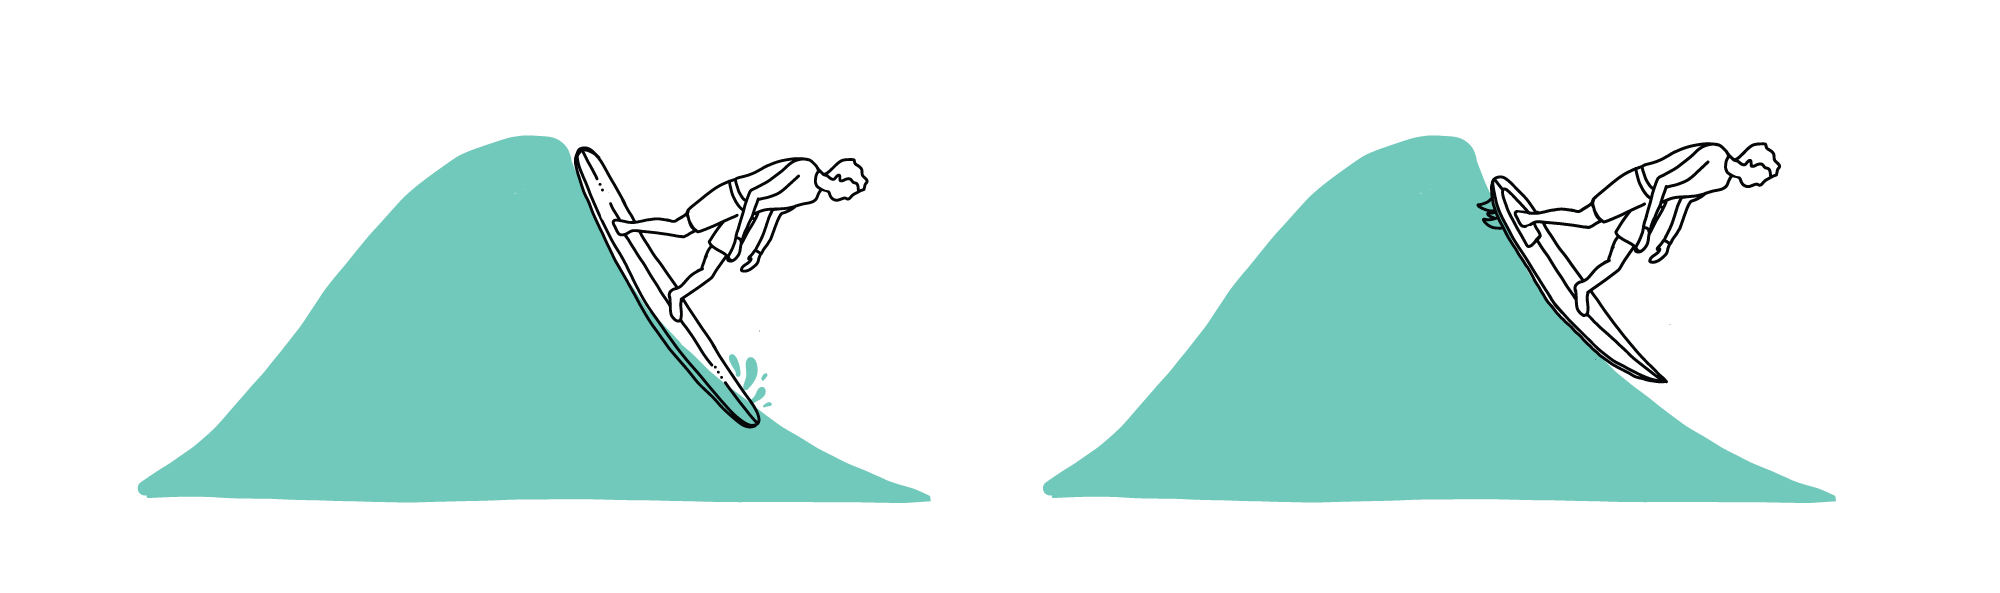 illustration Nose Dive Rocker Surfboard